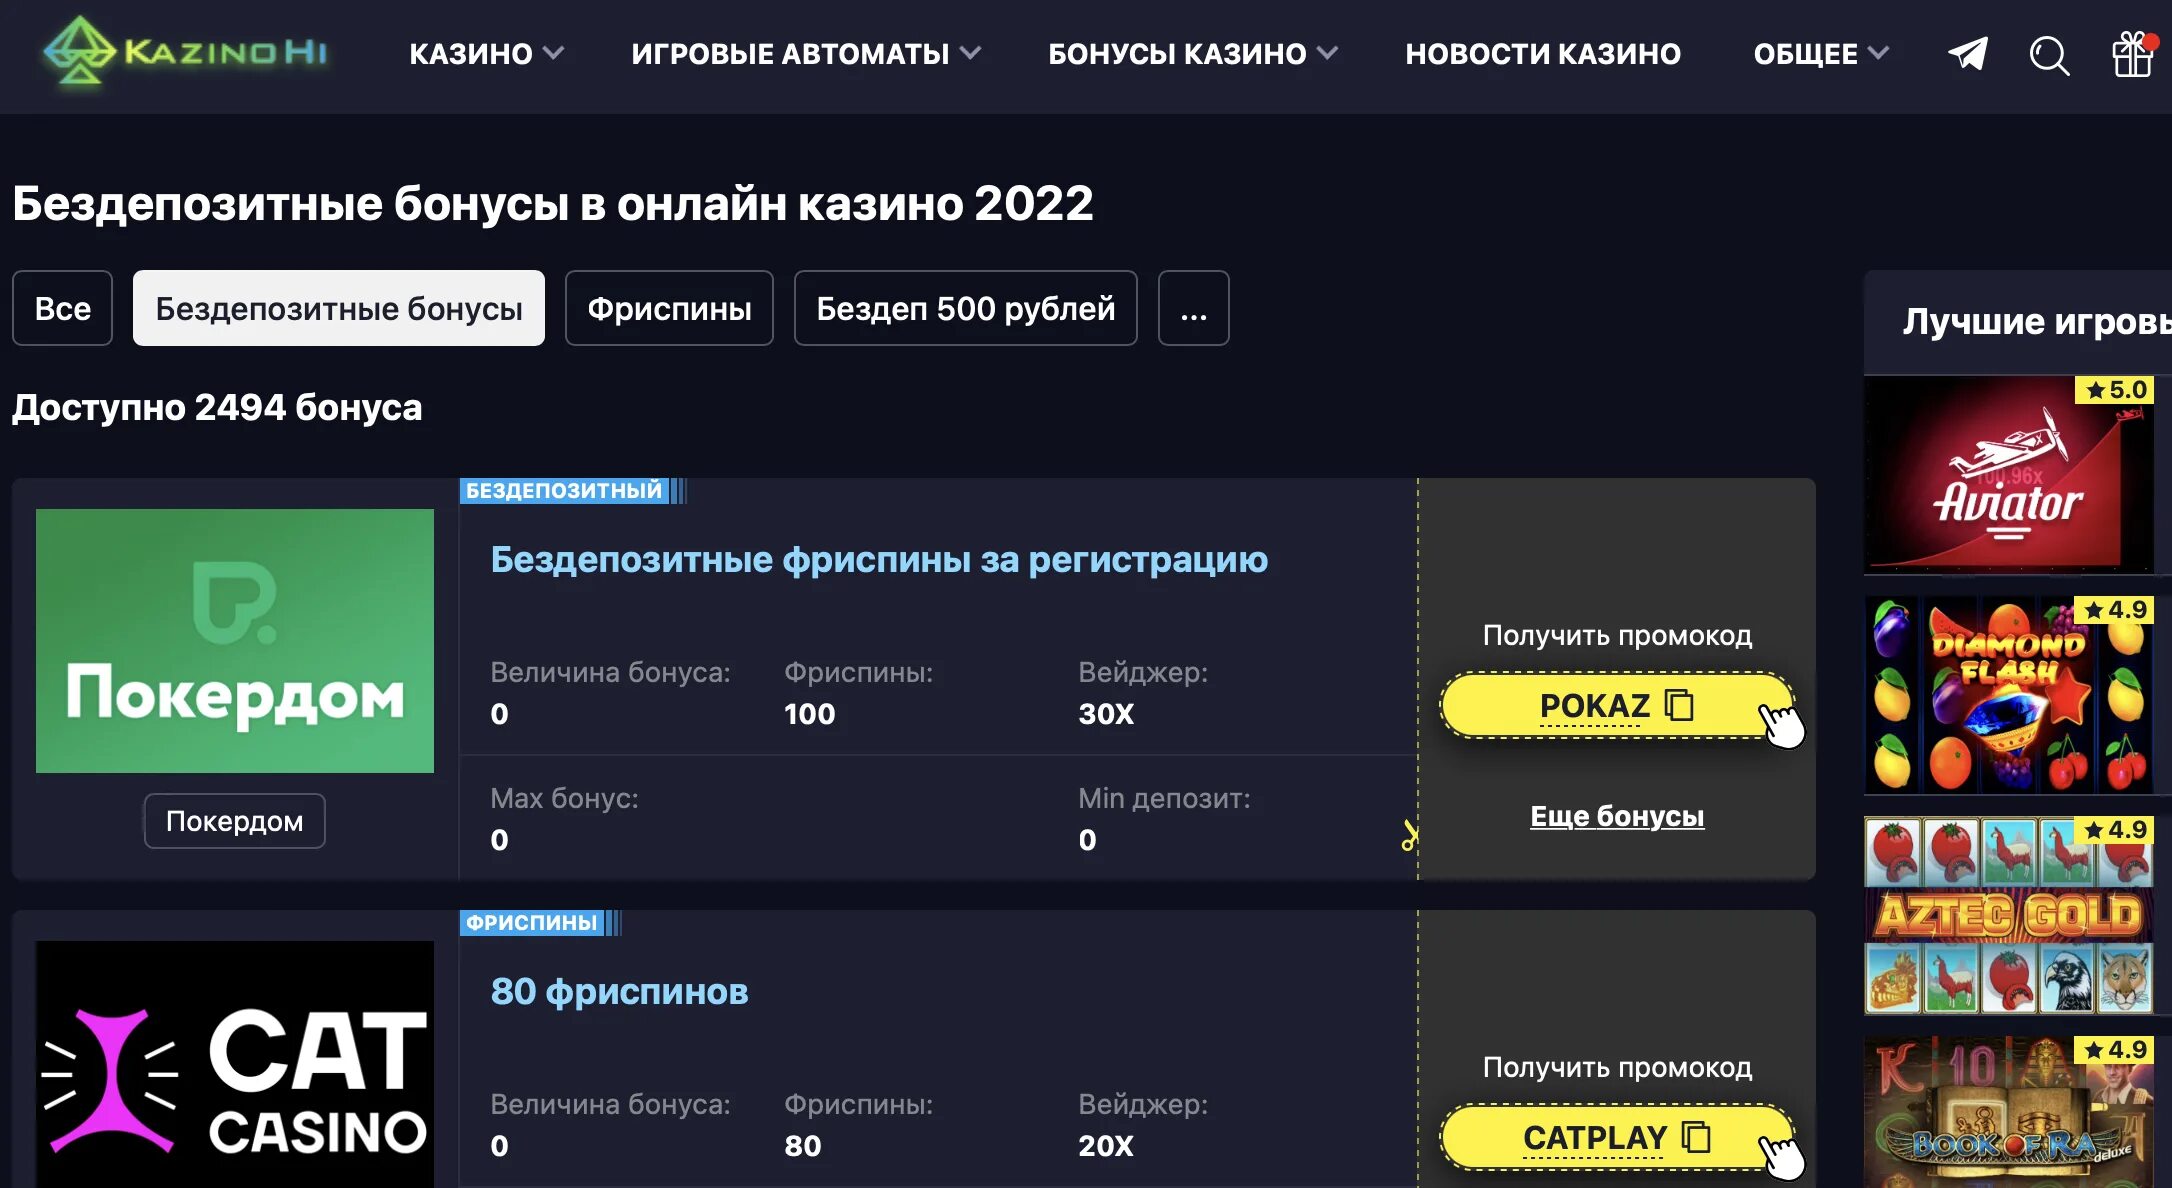 Бездепозитный бонус 3000 рублей за регистрацию. Бездепозитные бонусы казино. Бездепозитные бонусы в интернет казино.